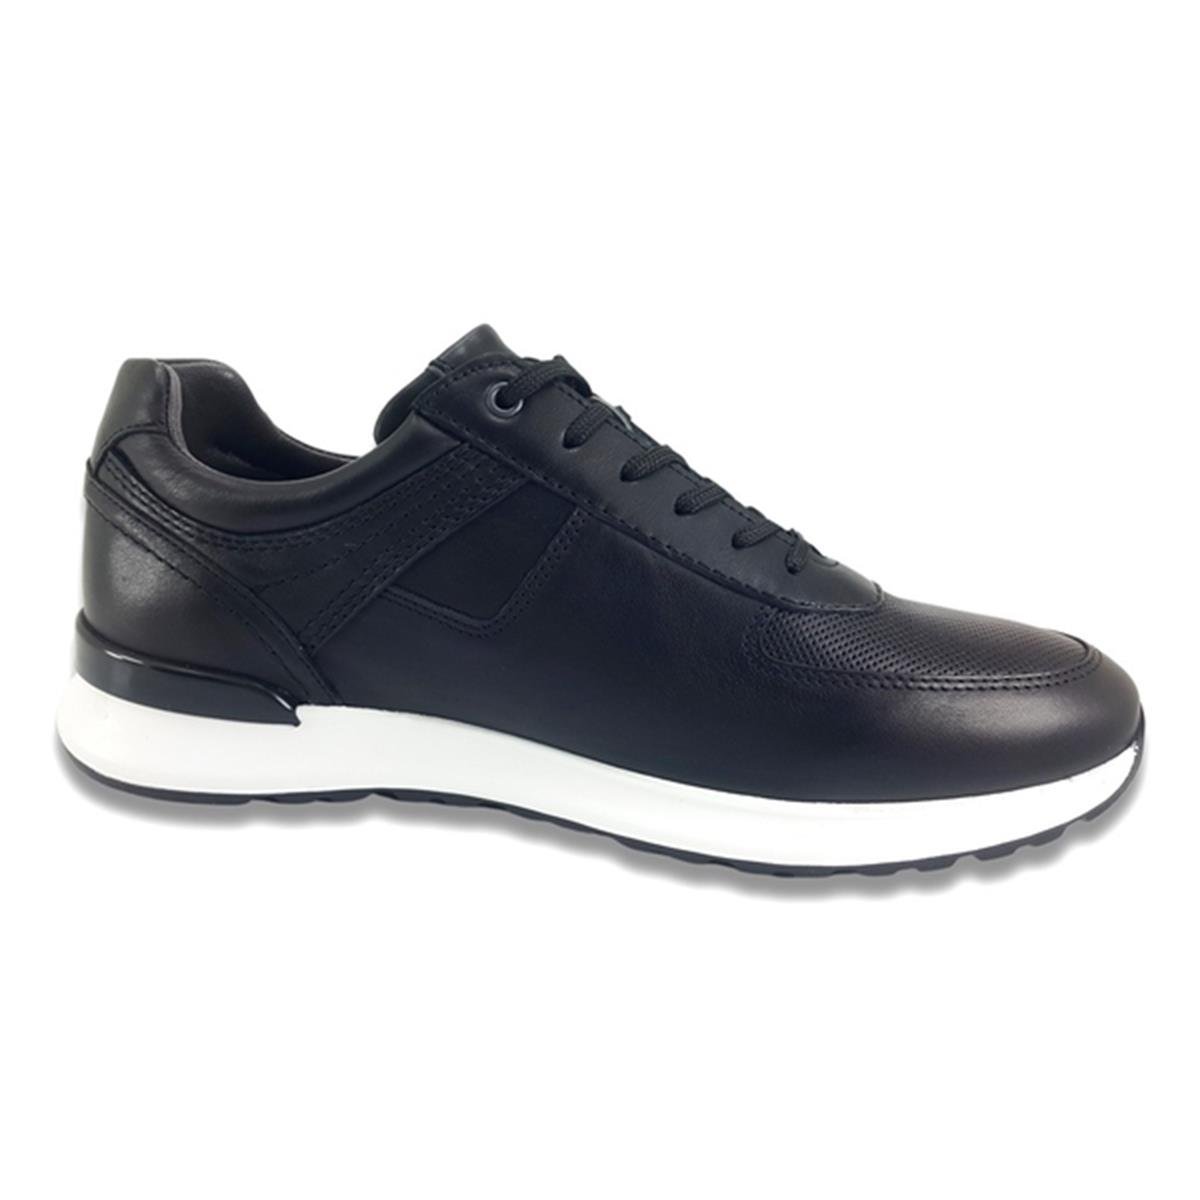 Greyder 14191 Sneaker Büyük Numara Ayakkabı Siyah - nehironline.com